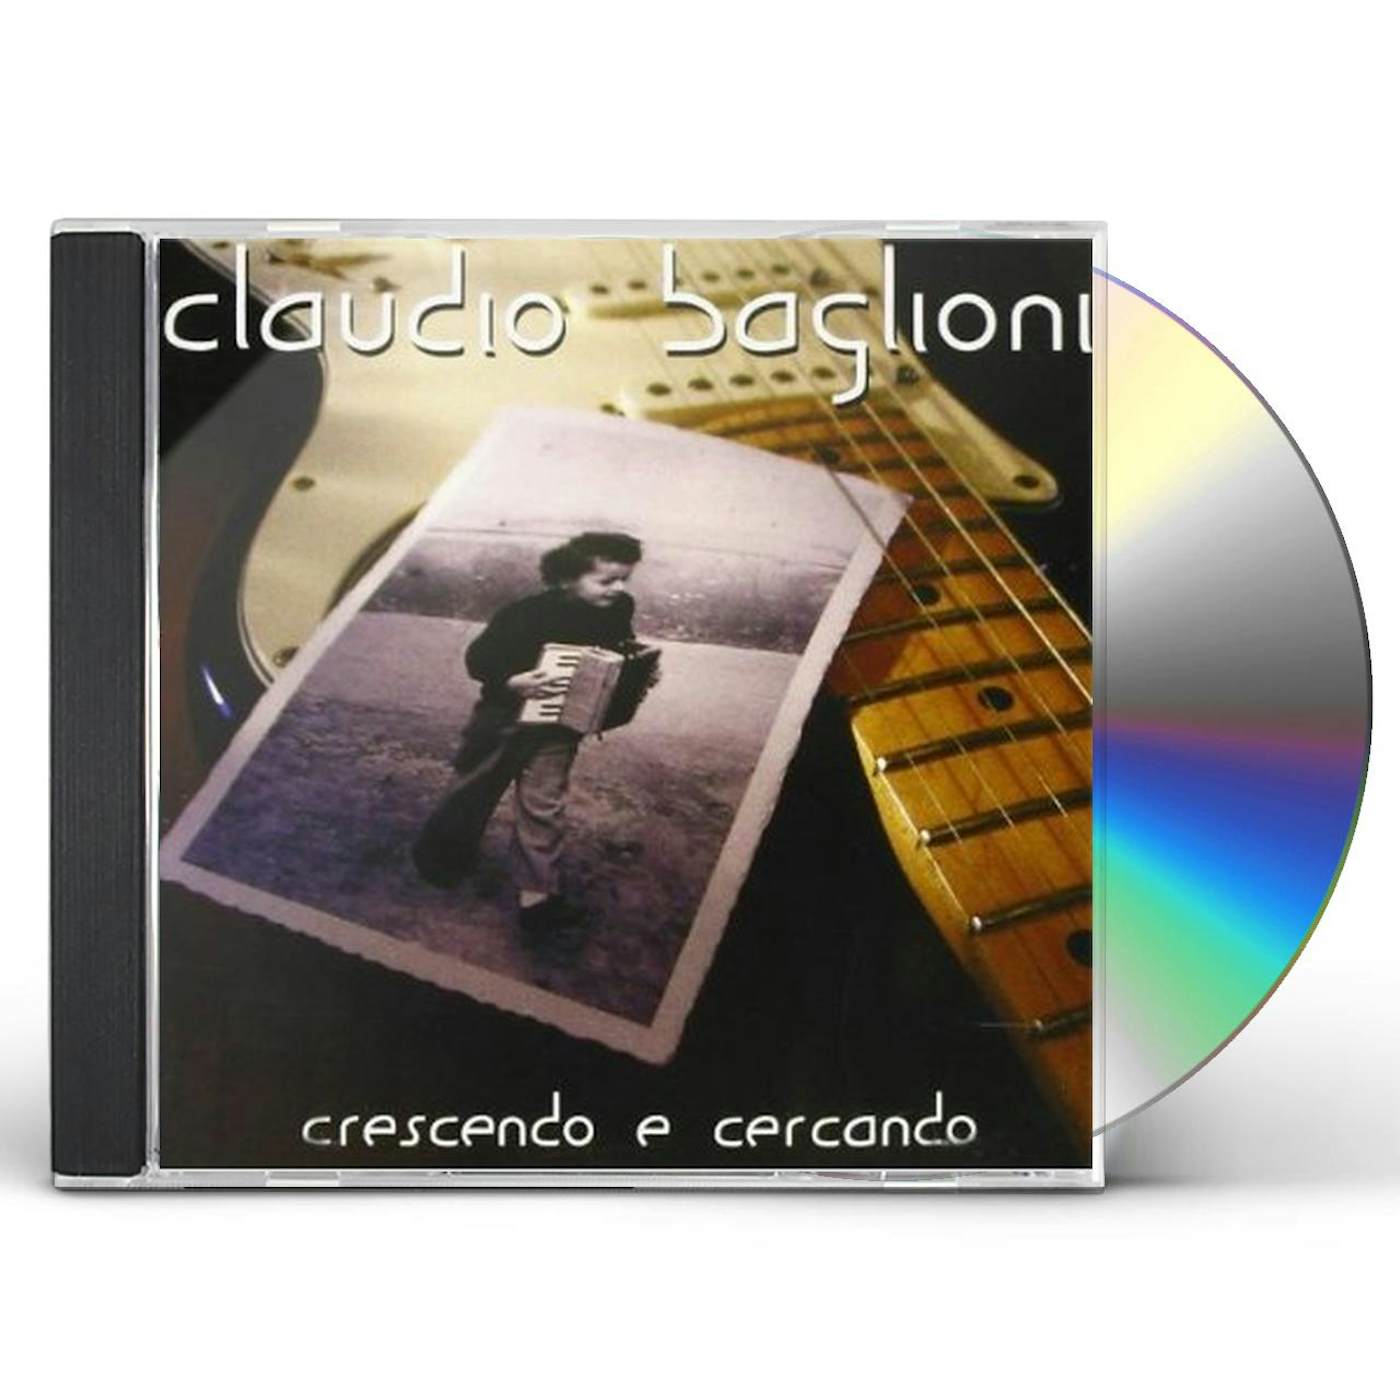 Claudio Baglioni IN QUESTA STORIA CHE E LA MIA CD